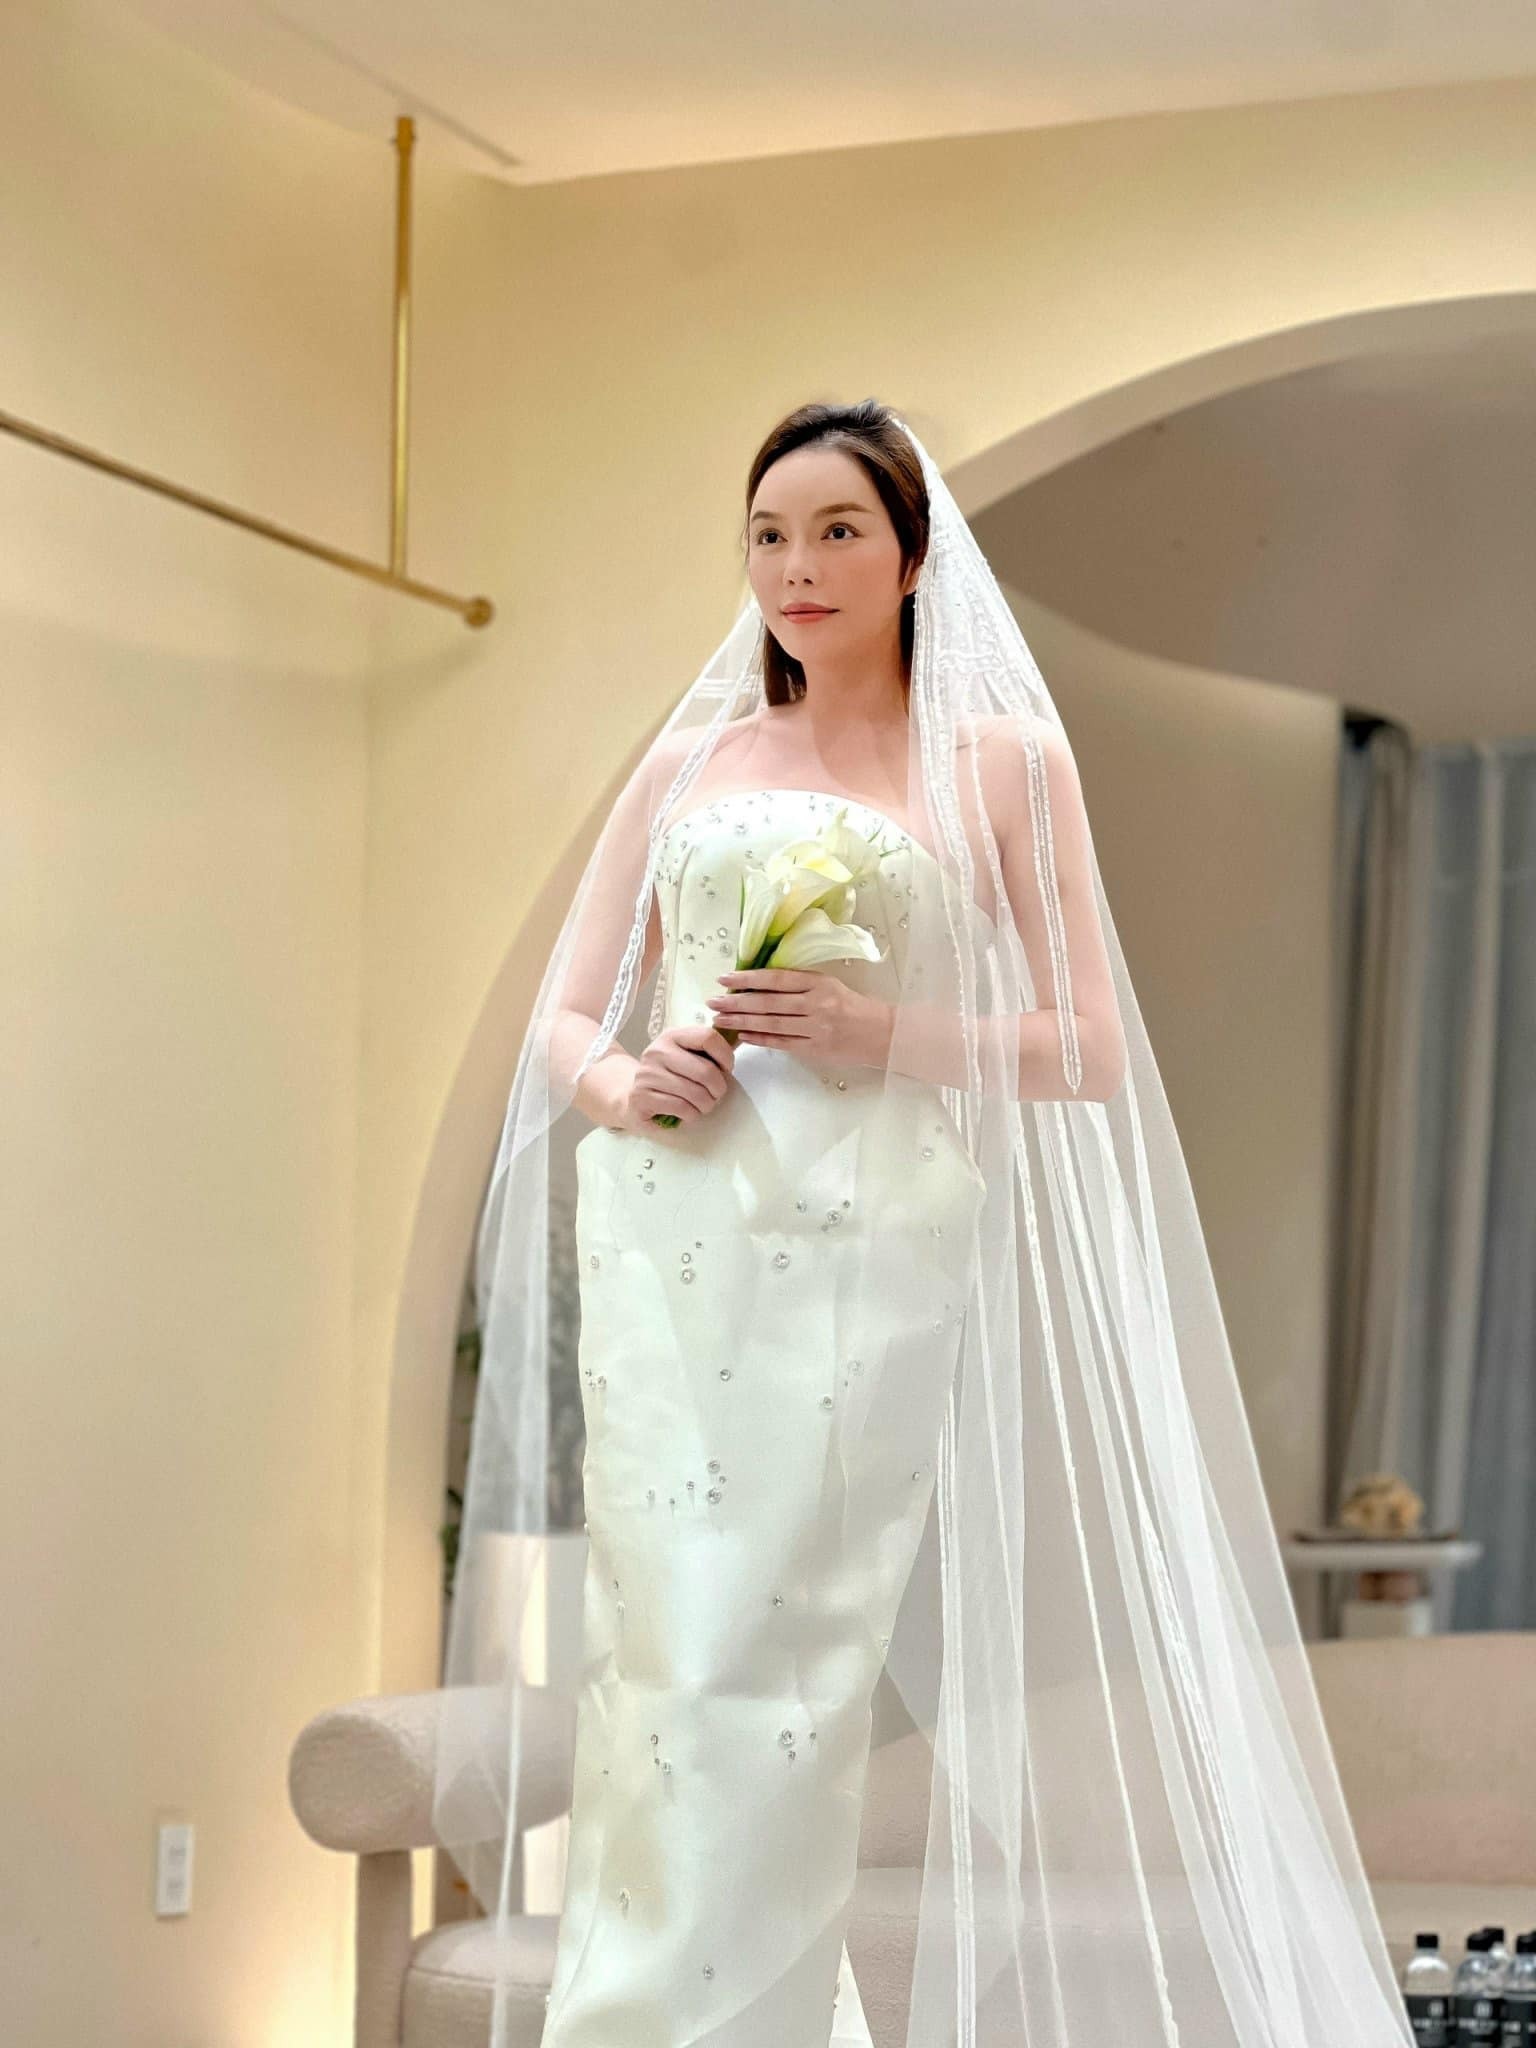 Thử làm cô dâu” – Trải nghiệm vô cùng ý nghĩa cho các cô dâu trước ngày cưới